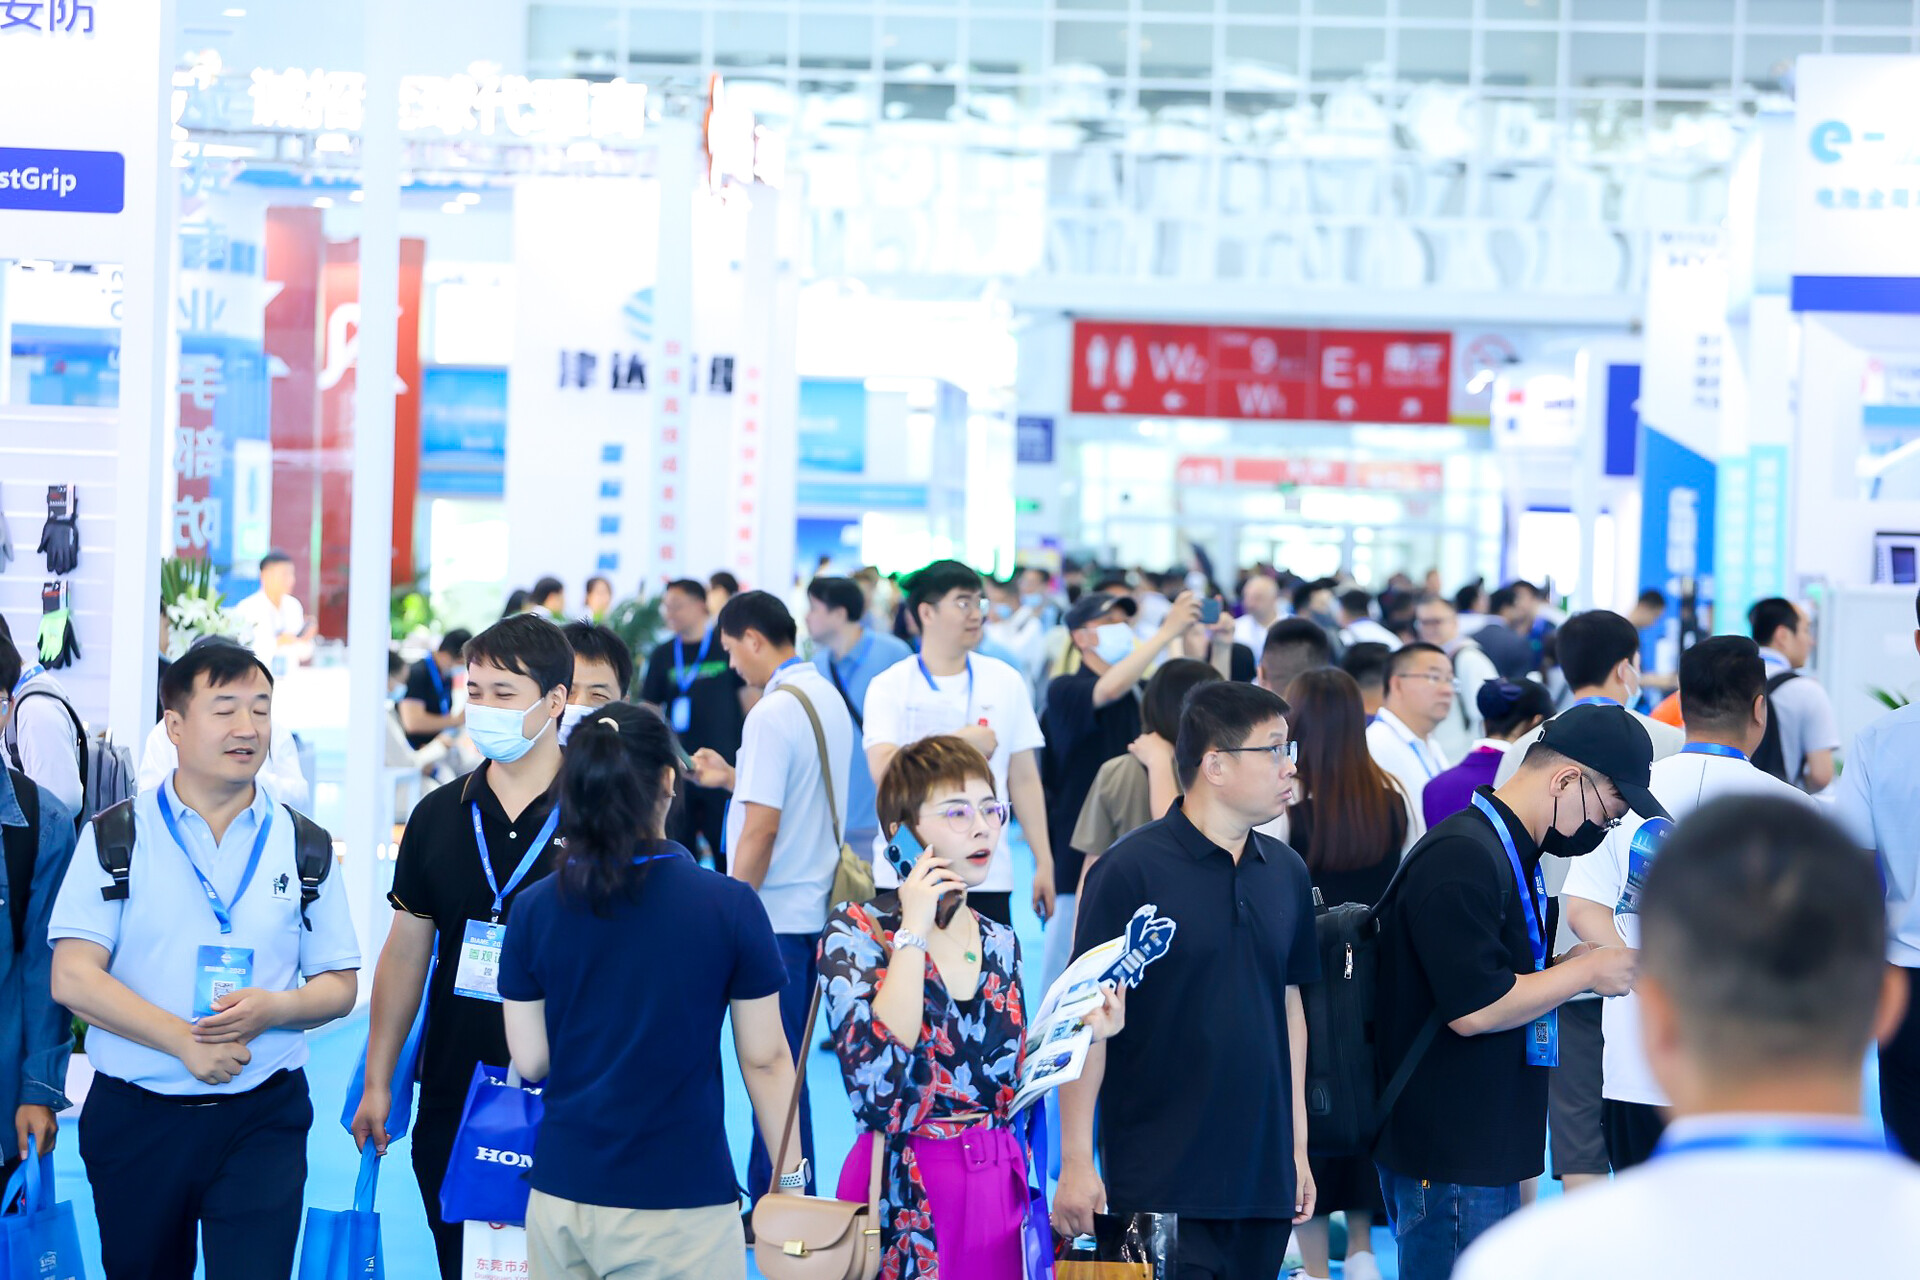 北京国际线束加工设备展览会